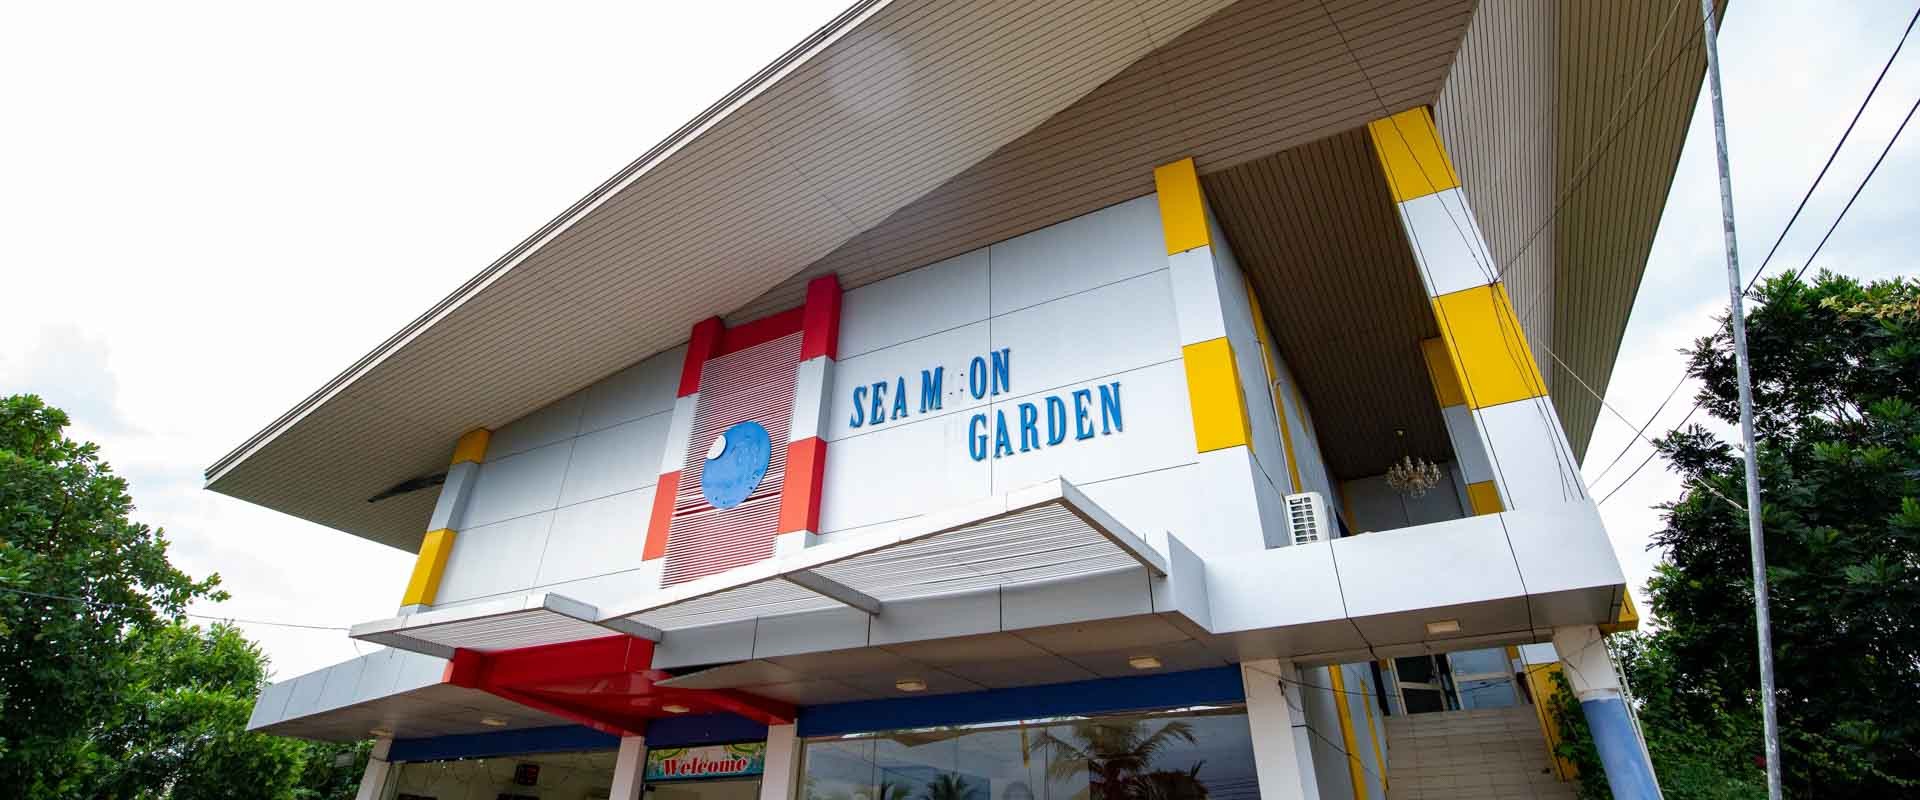 Sea Moon Garden - Gateway to East